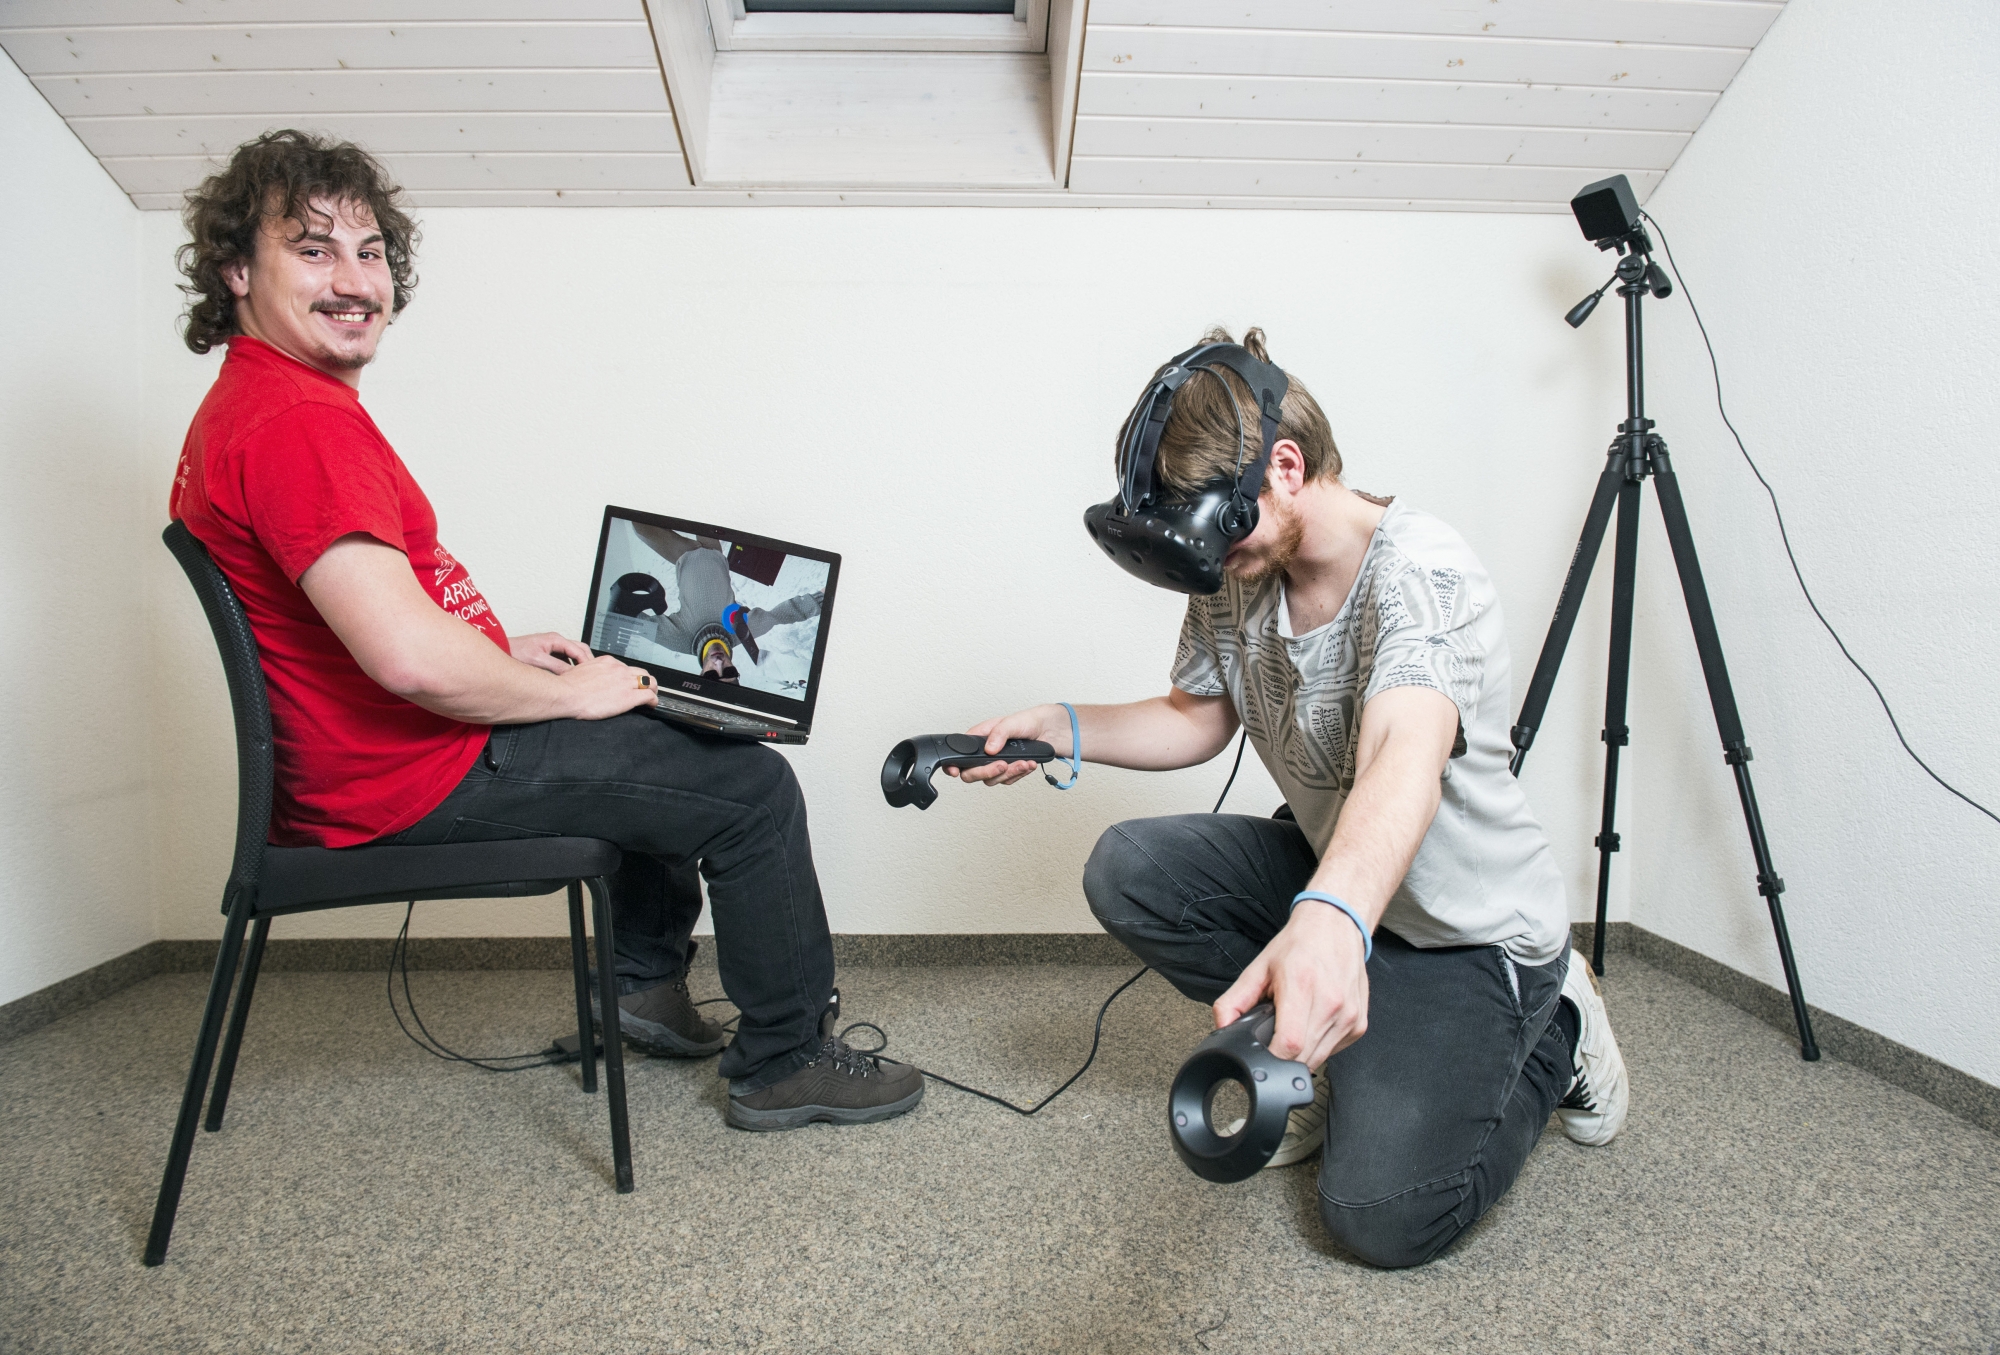 Jeff Zufferey et Loïc Berthod en pleine simulation de sauvetage grâce à leur application de réalité virtuelle.